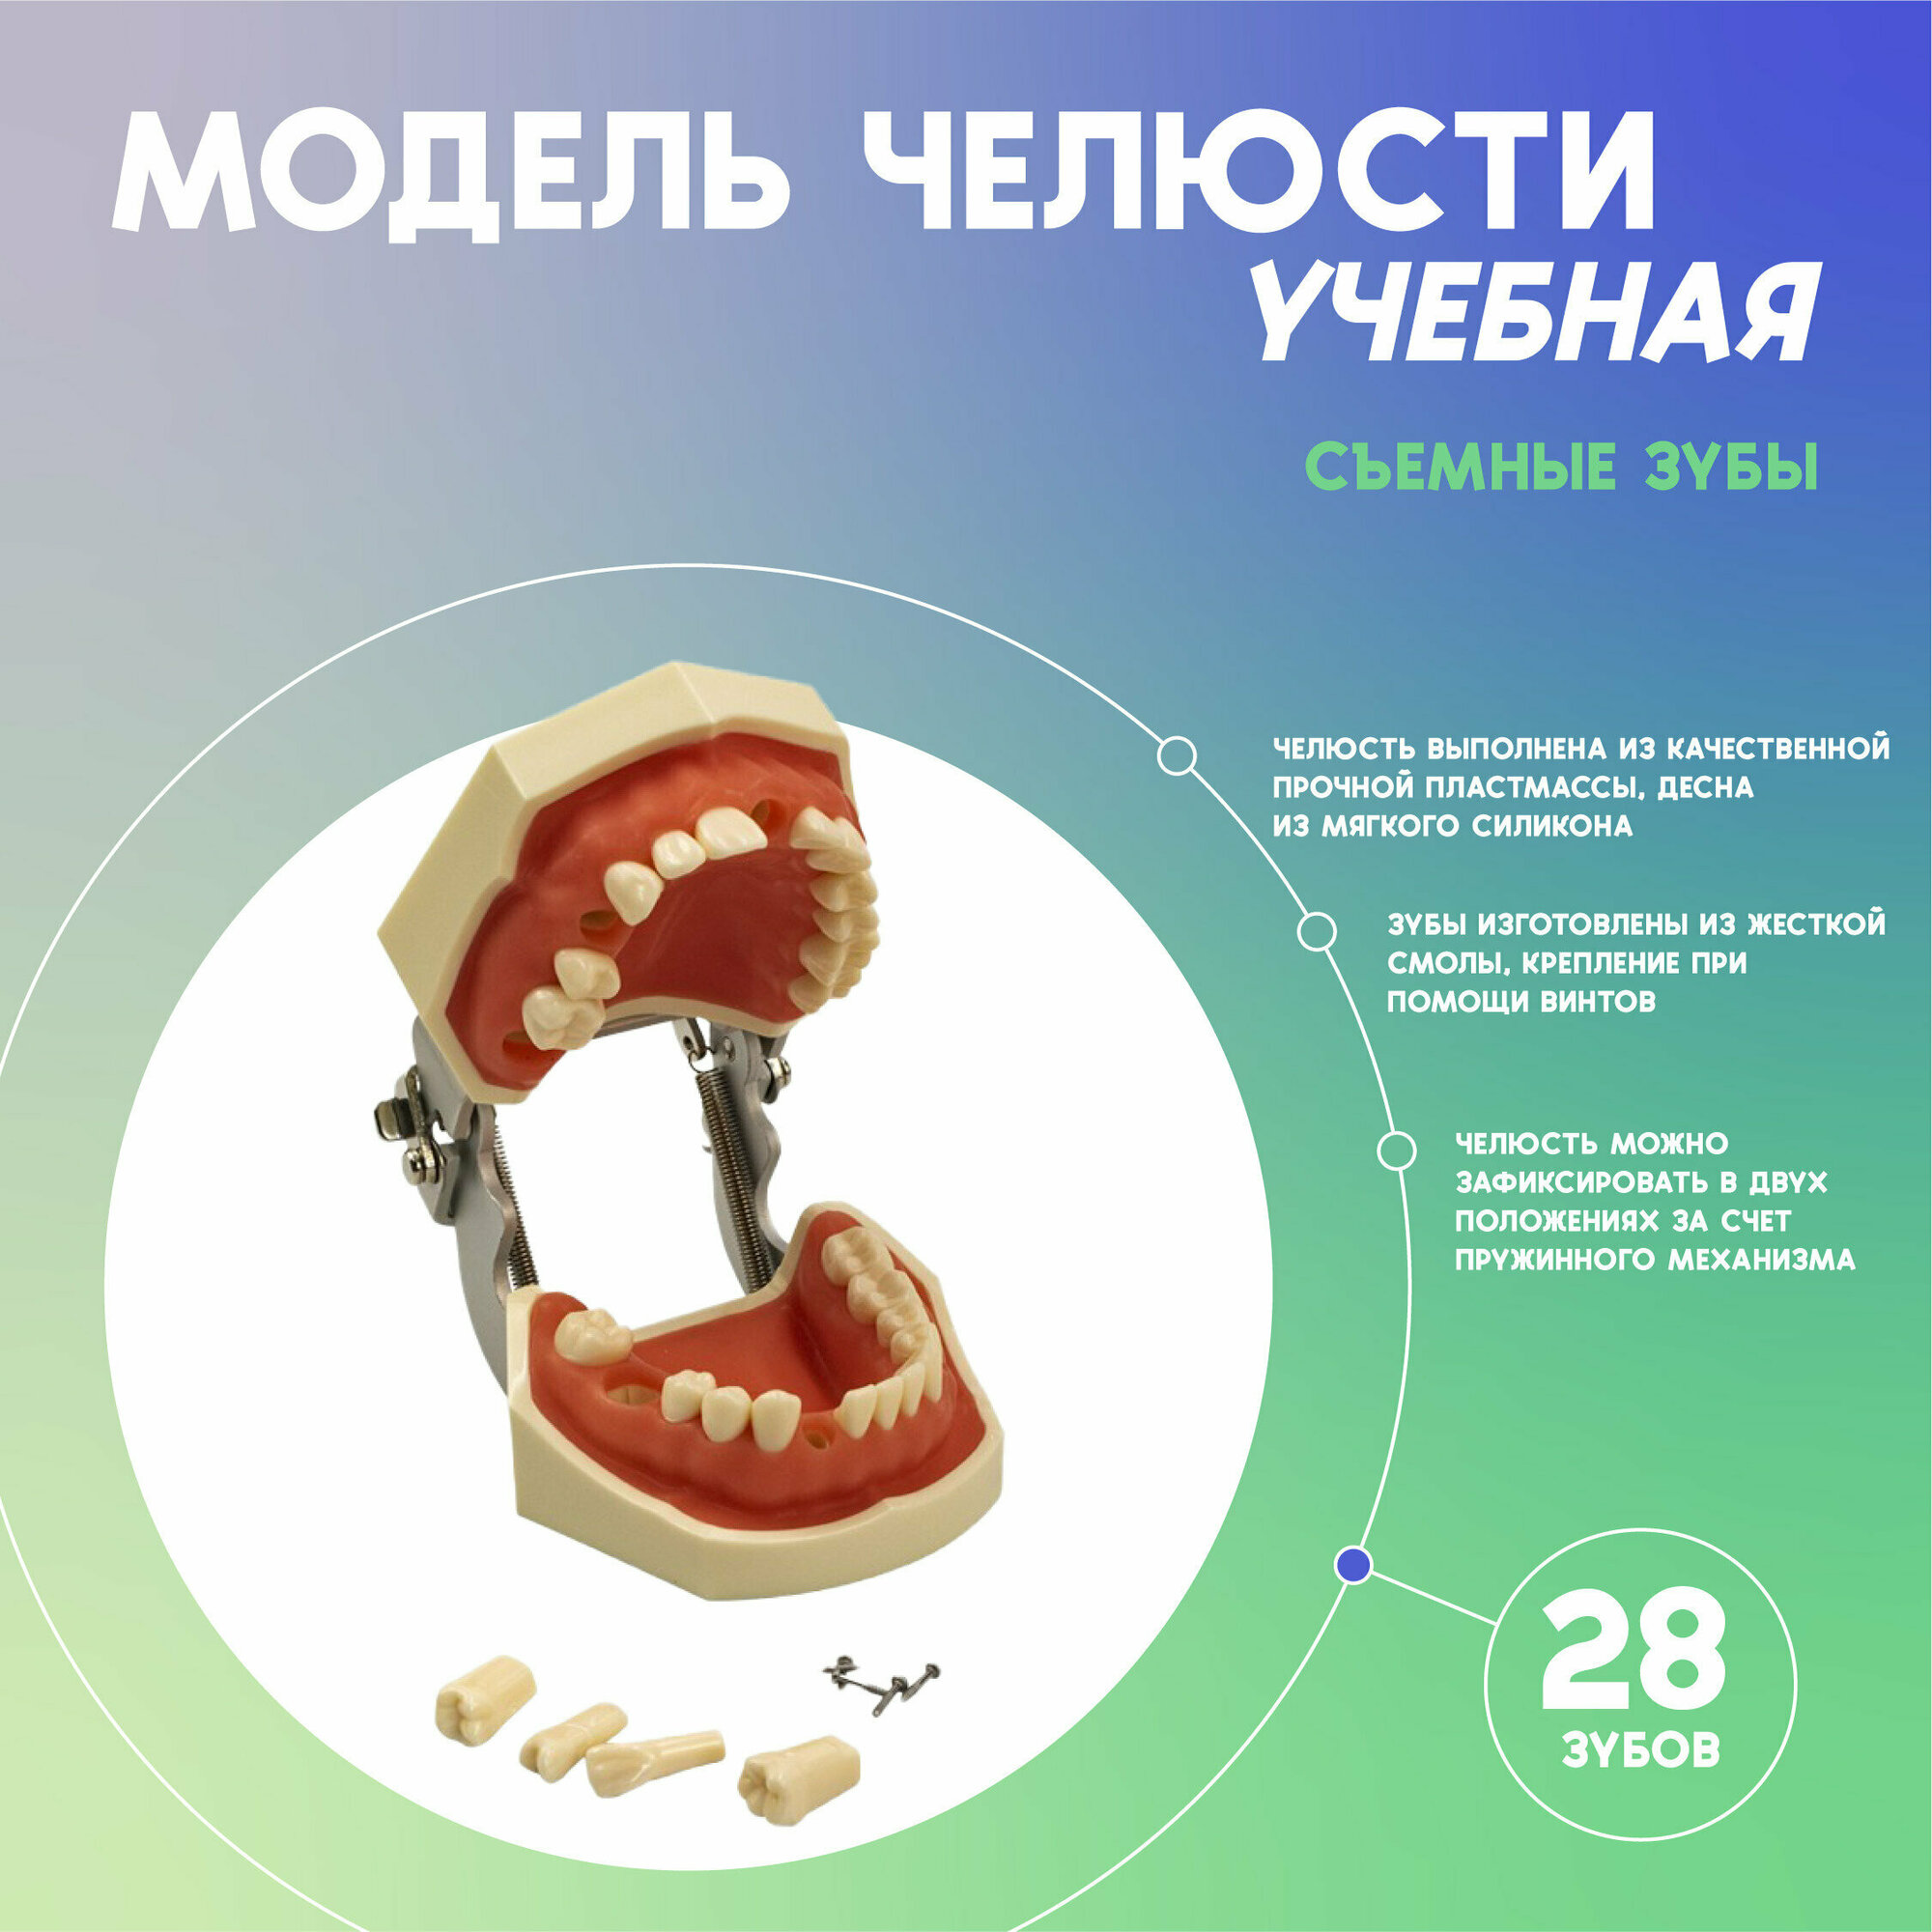 Модель челюсти человека со съемными зубами